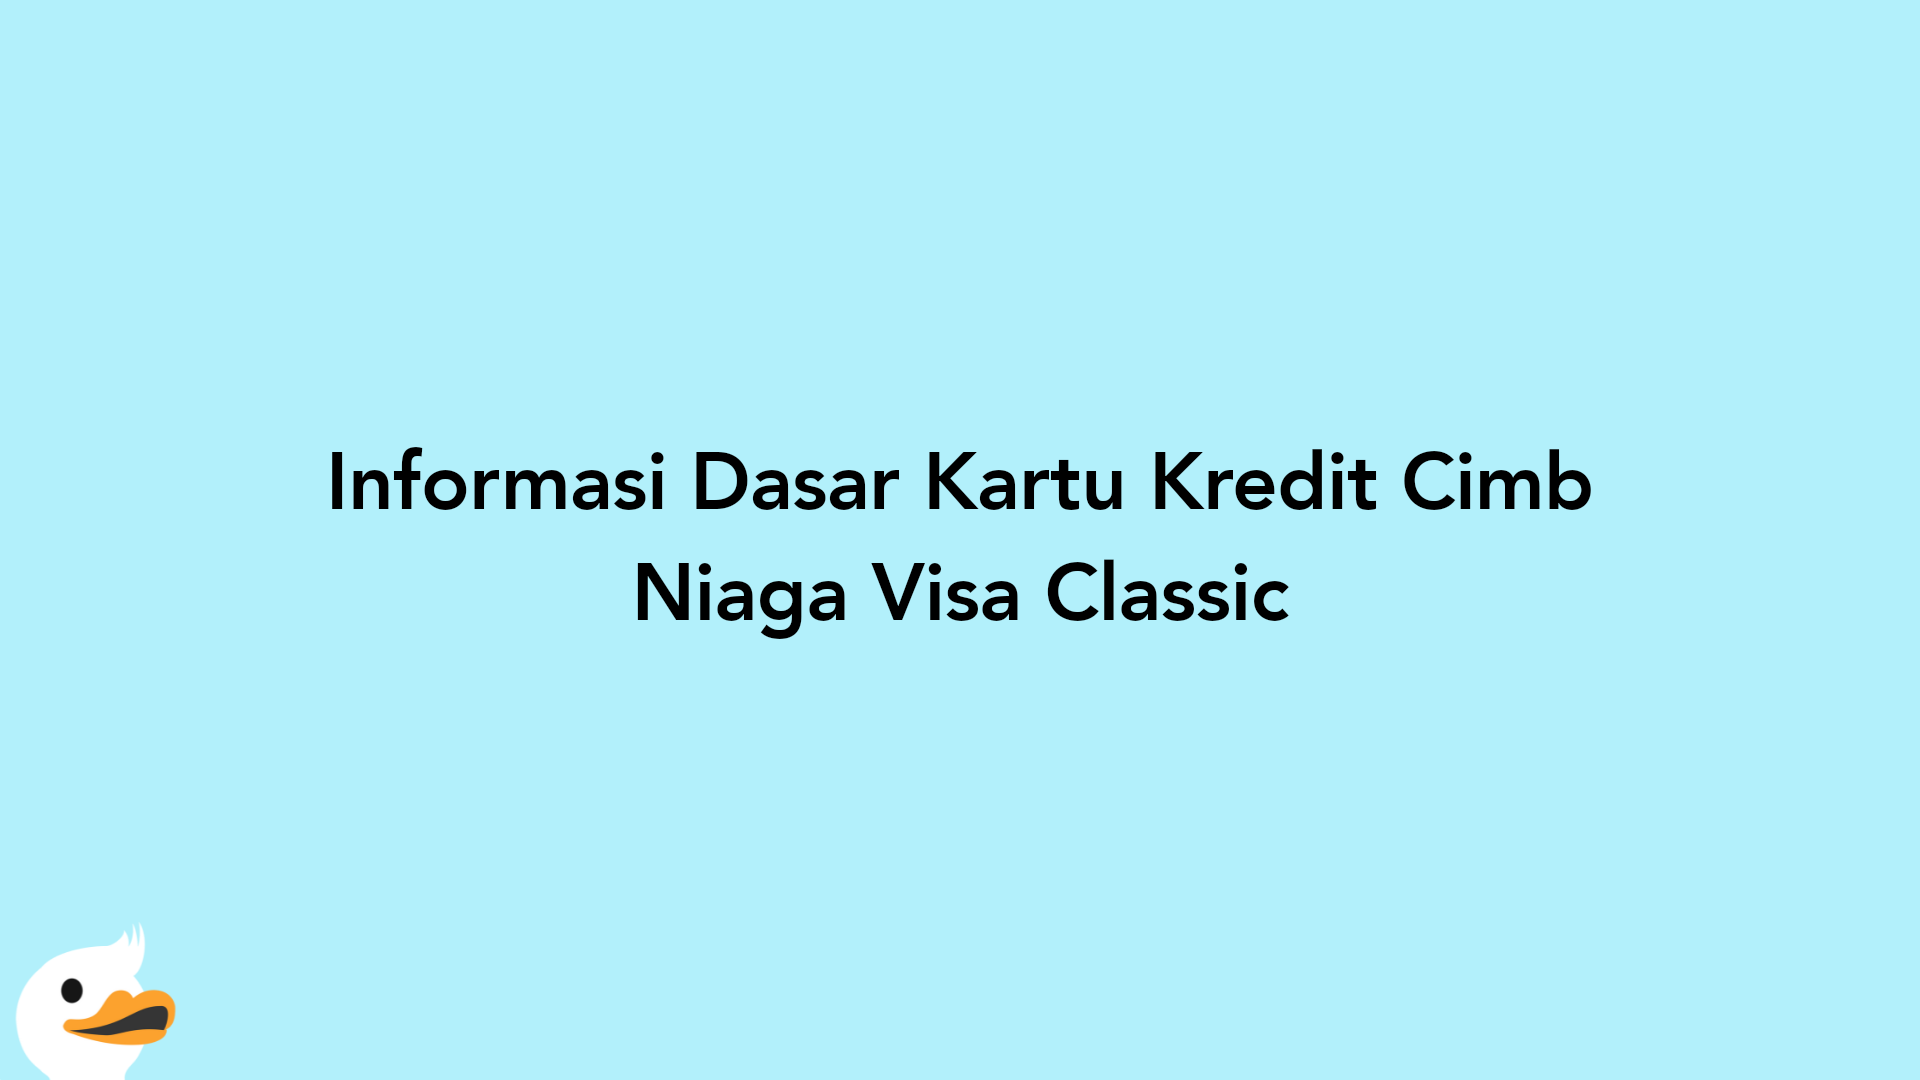 Informasi Dasar Kartu Kredit Cimb Niaga Visa Classic